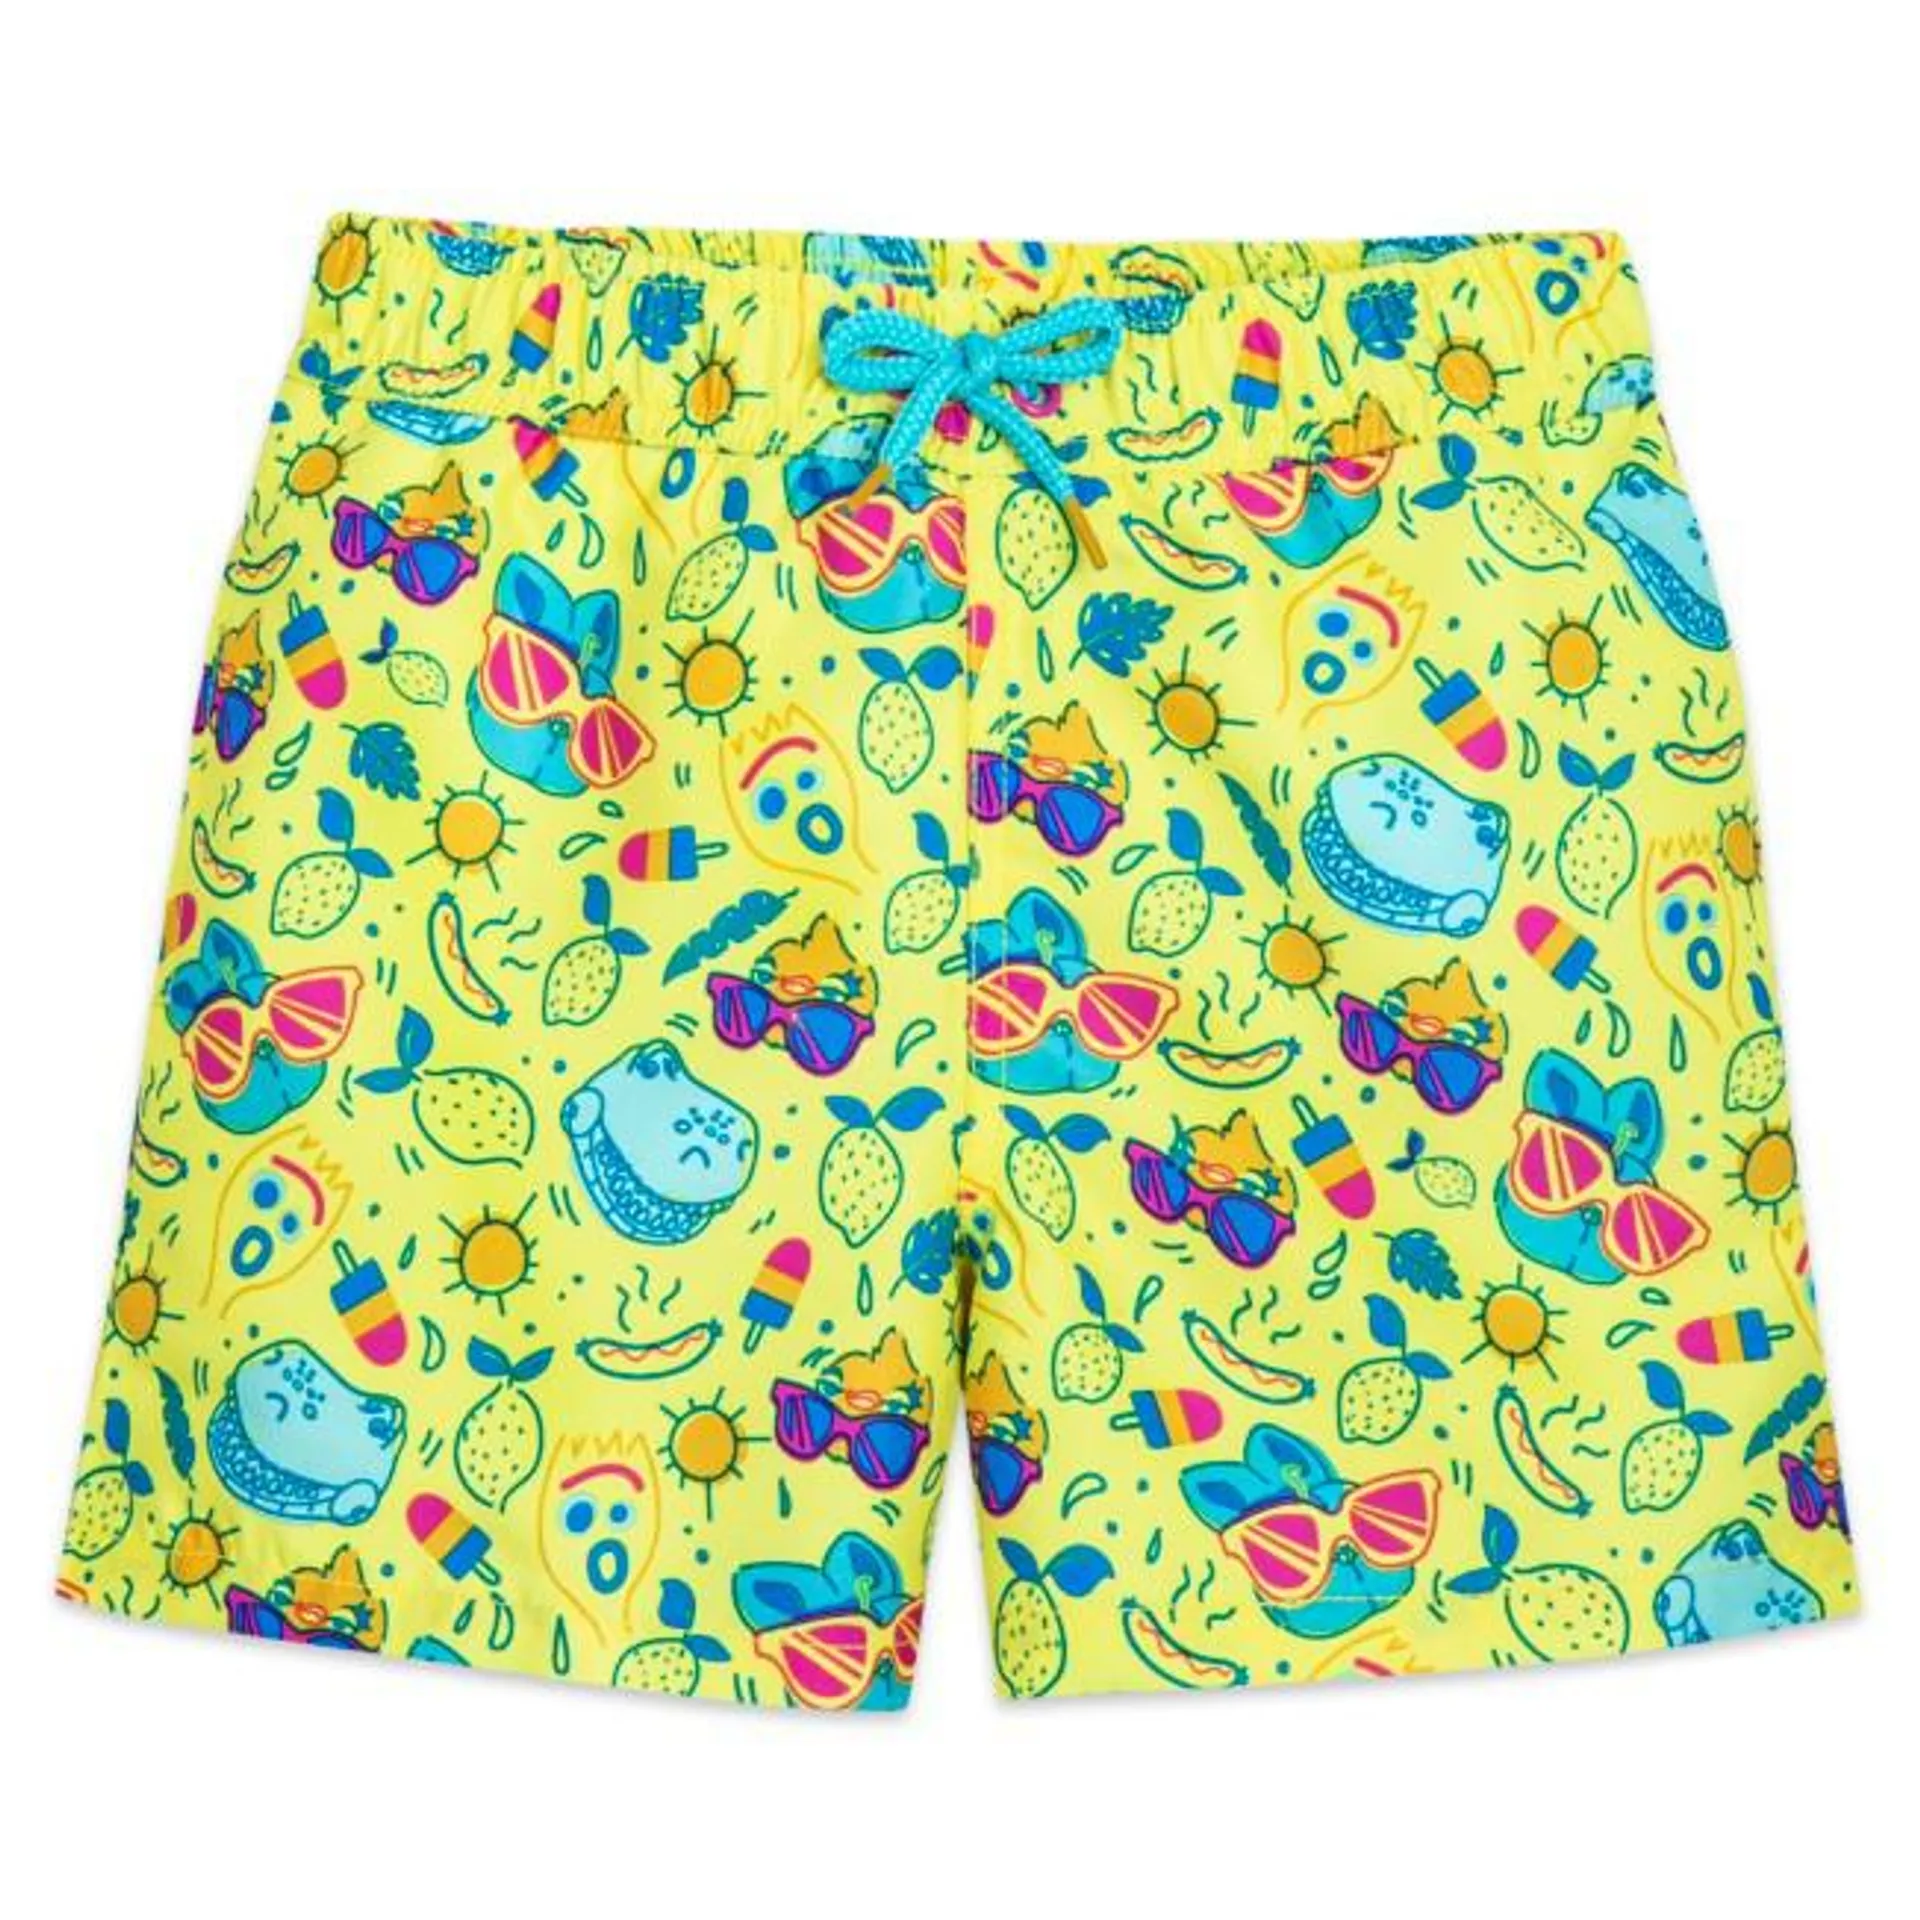 Disney Store Toy Story Summer Splash Swim Trunks For Kids